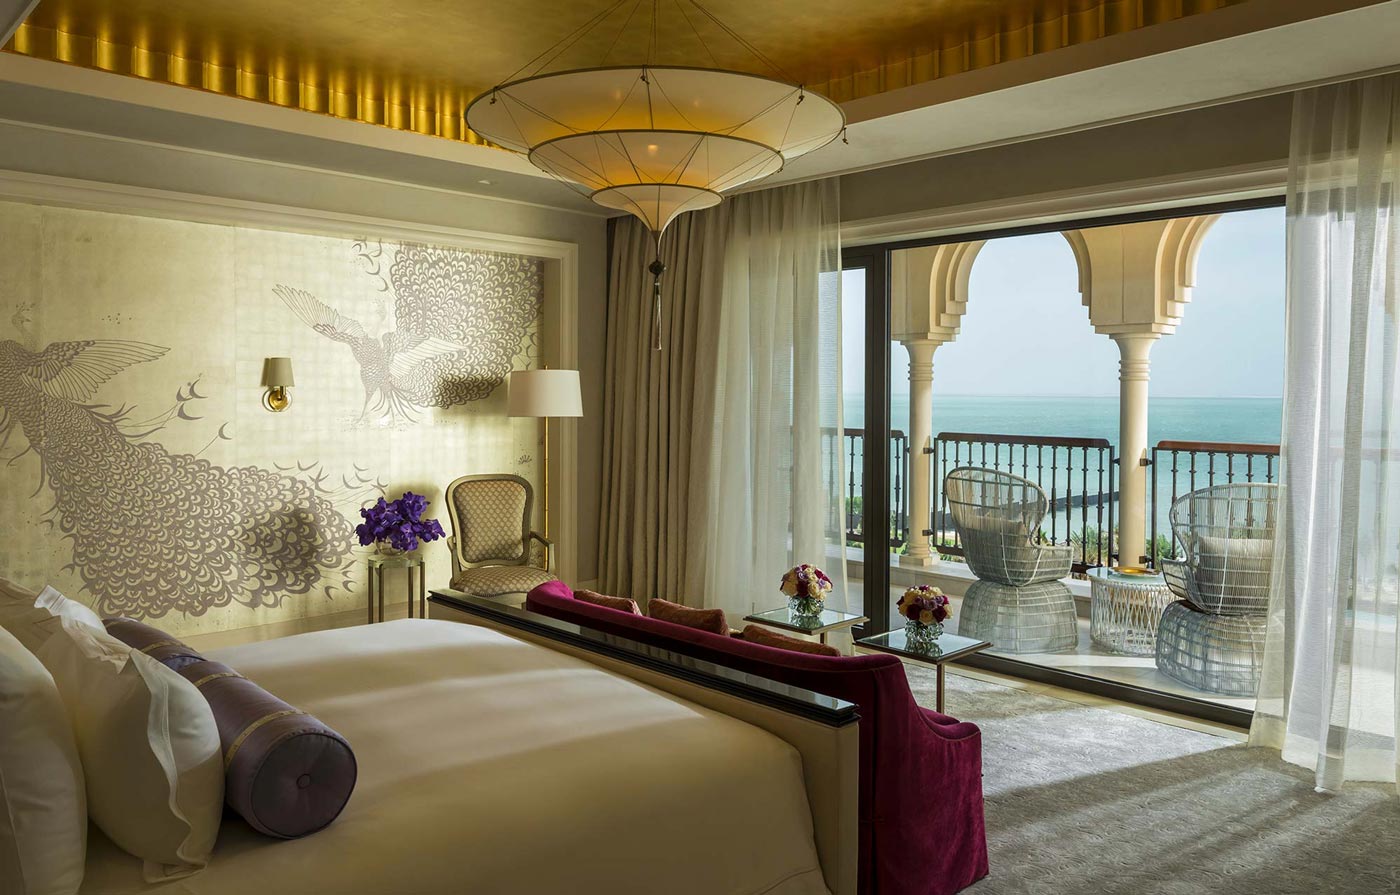 3 Ebenen einfache Seidenlampe Scheherazade im Four Seasons Resort Hotel in Dubai, Hauptschlafzimmer der Royal Suite